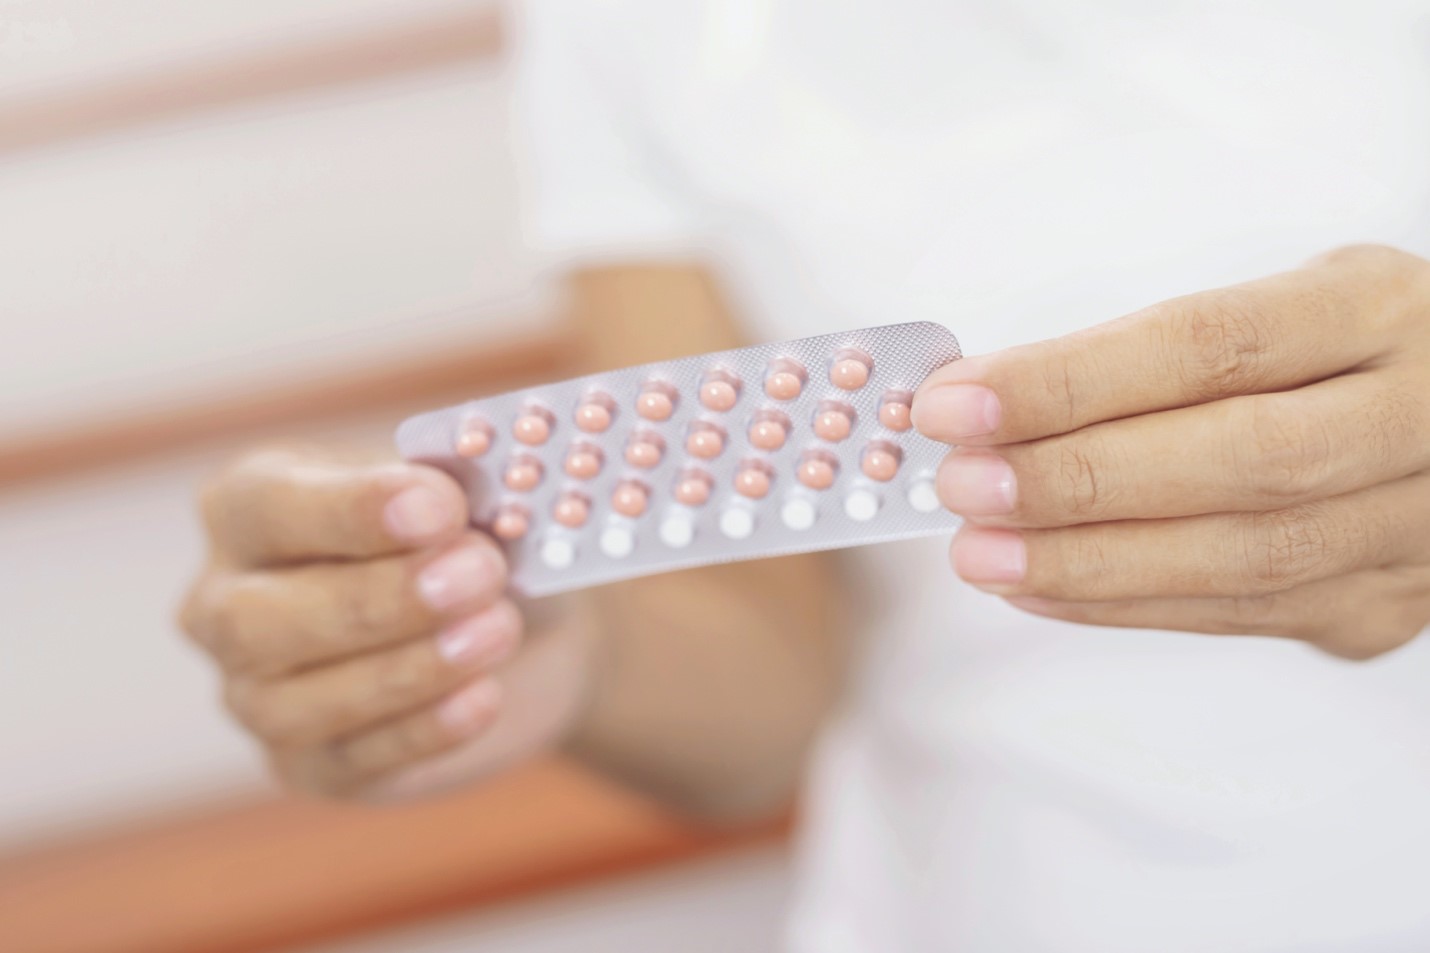 7 lý do để chọn phương pháp tránh thai hiện đại phù hợp và lời khuyên từ chuyên gia - Ảnh 2.